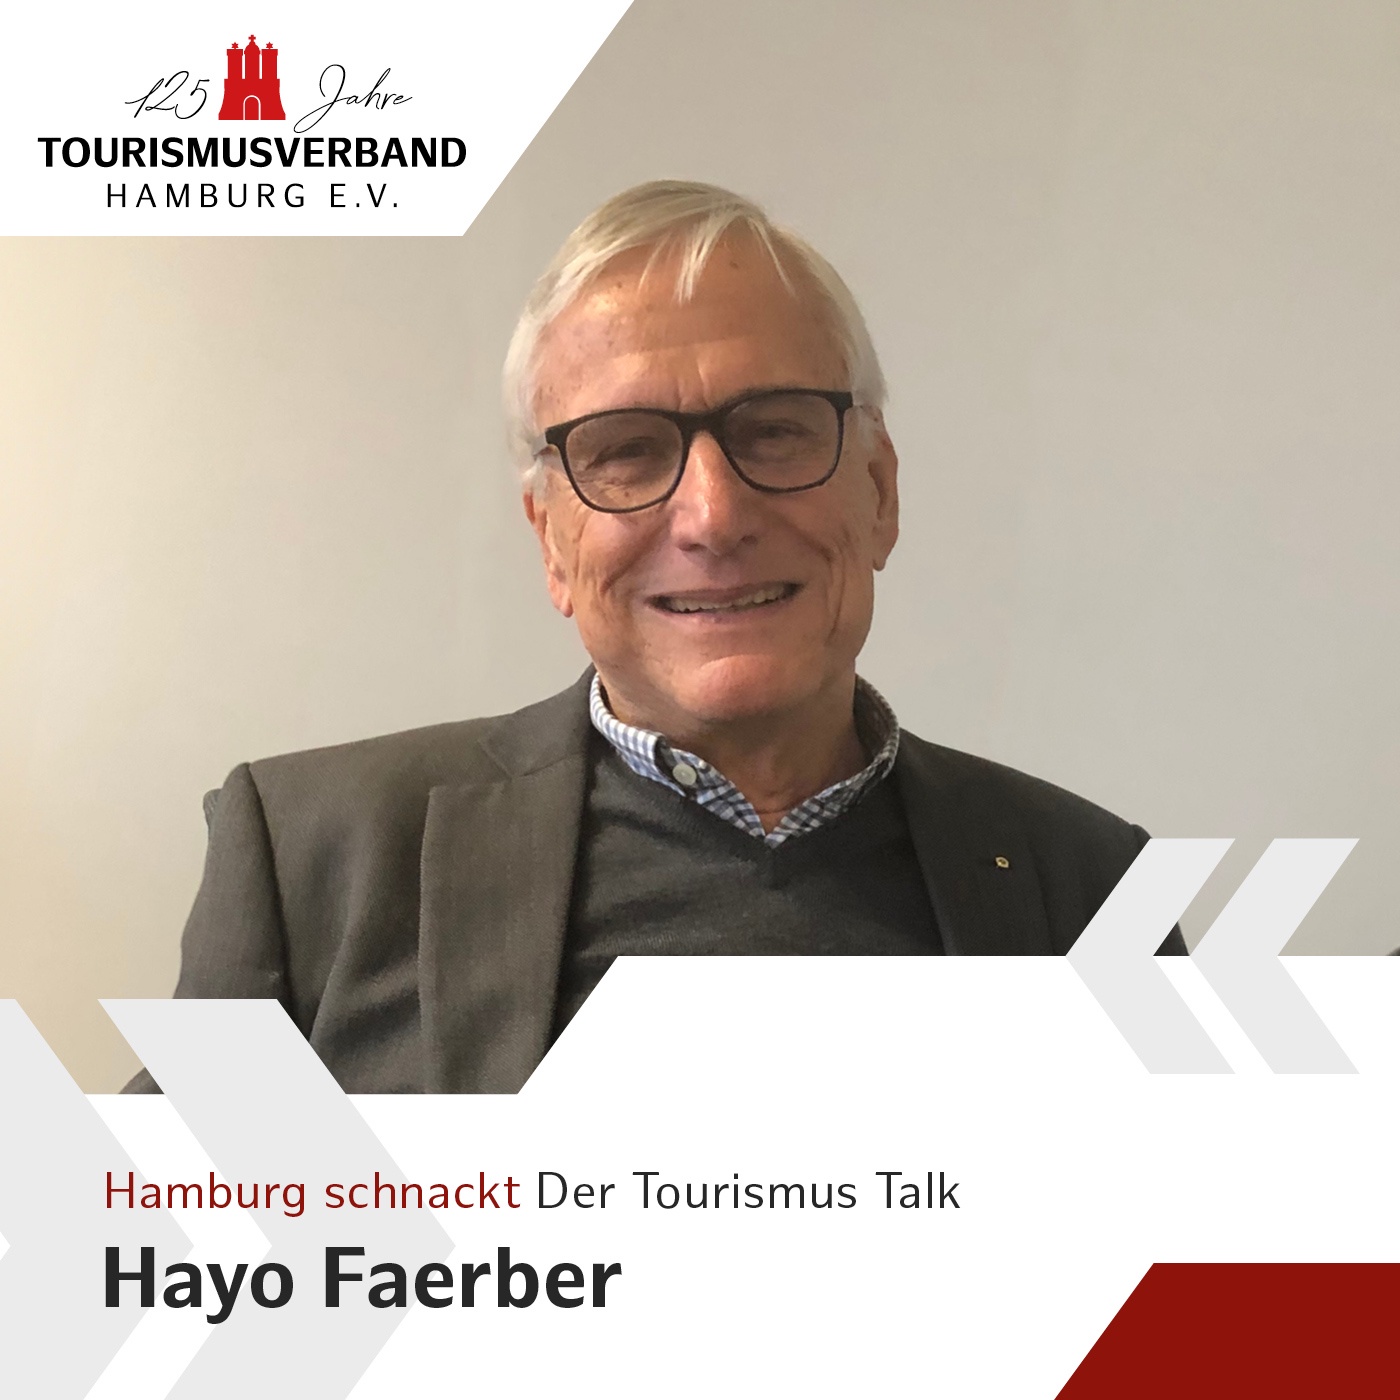 Hamburg schnackt – mit Hayo Faerber, Panoptikum